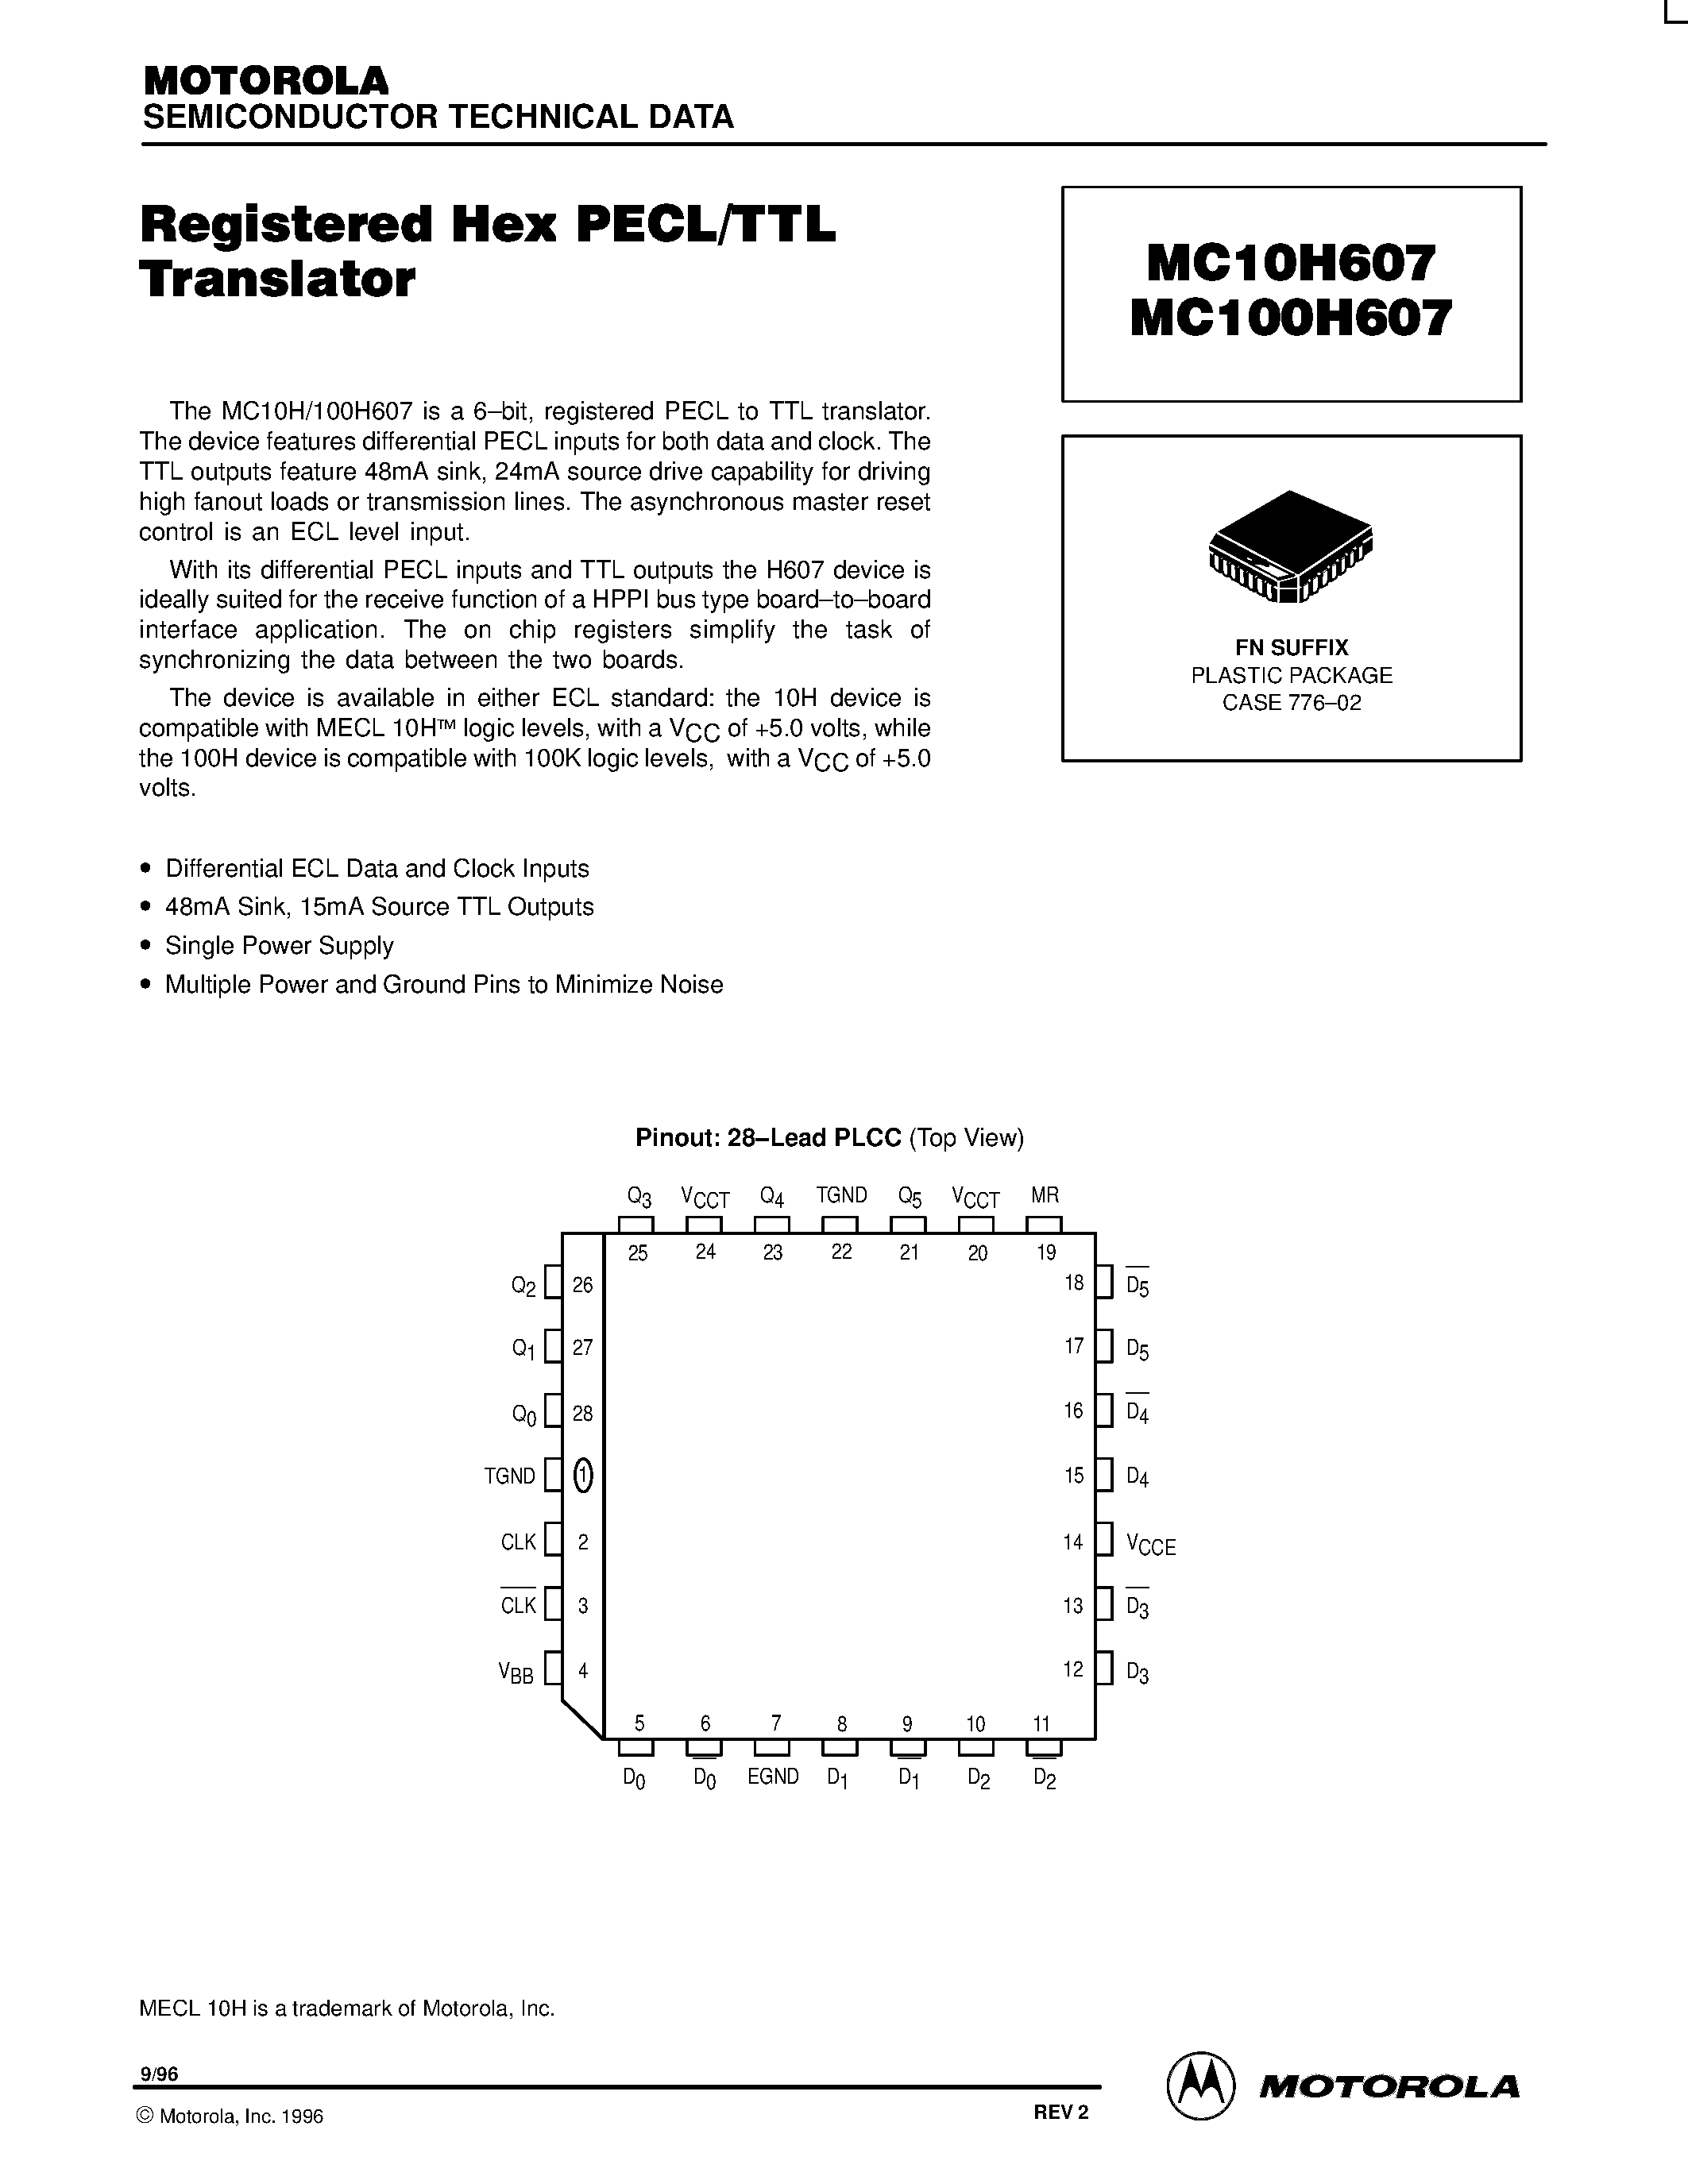 Даташит MC10H607 - Registered Hex PECL/TTL Translator страница 1